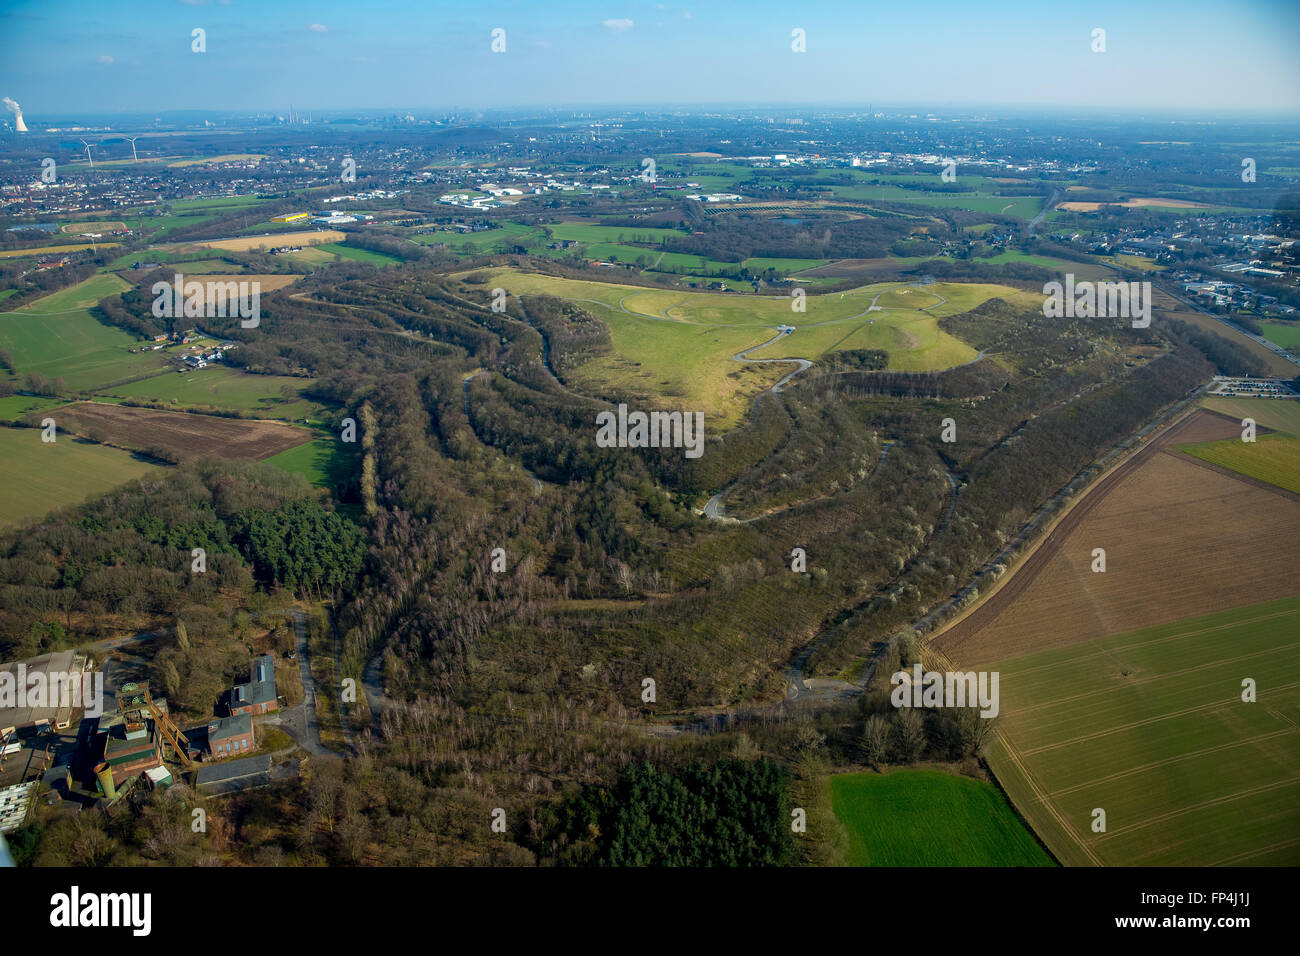 Vista aerea, heap della Germania settentrionale, Kamp-Lintfort, regione del Basso Reno, Renania settentrionale-Vestfalia, Germania, Europa, vista aerea, Foto Stock